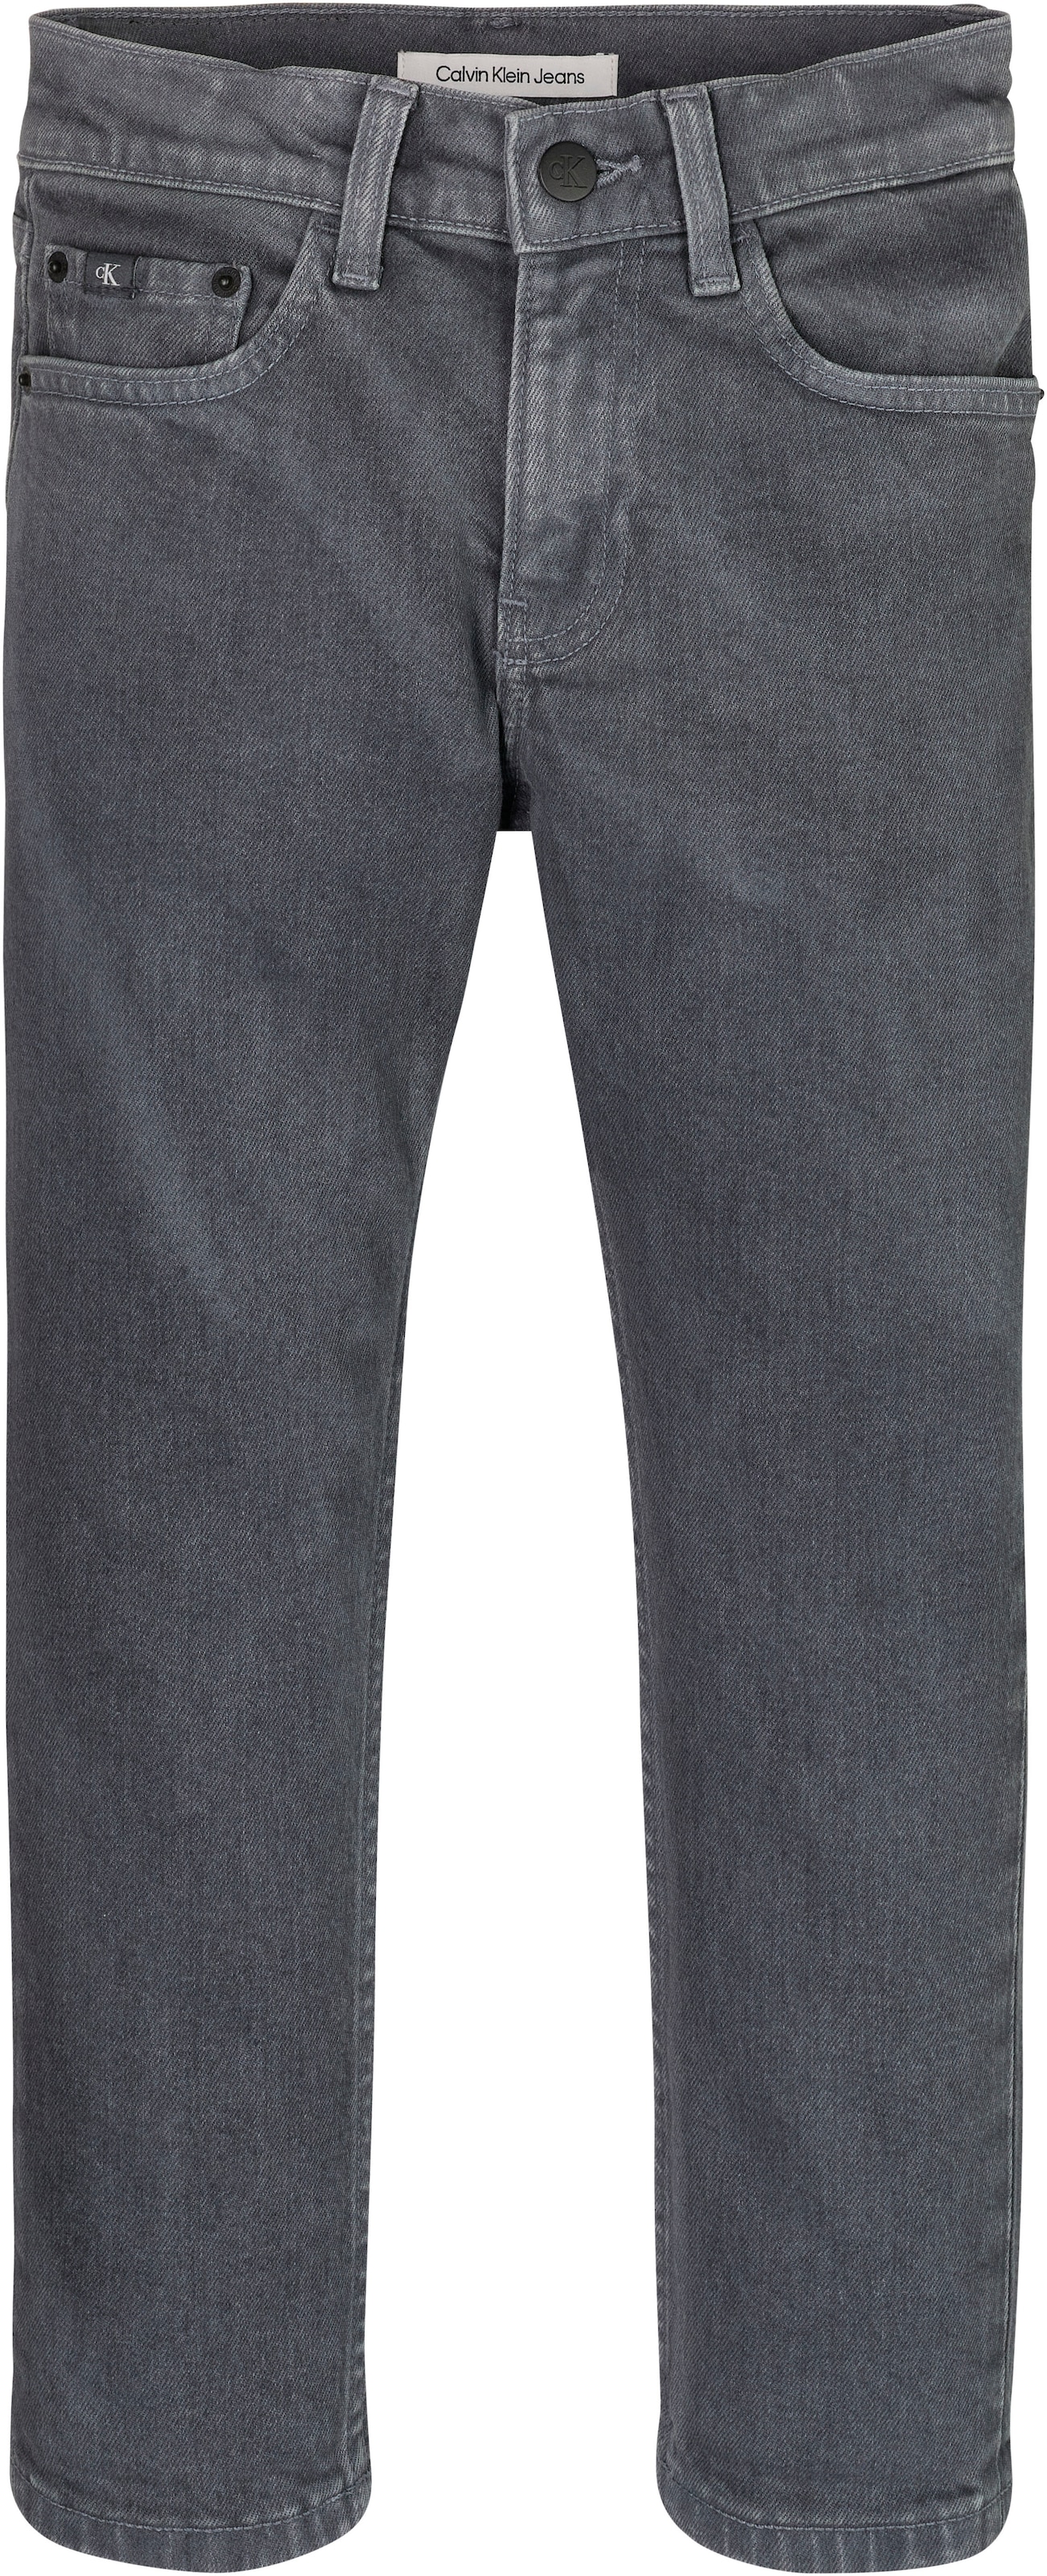 DARK OVERDYED« Jeans Stretch-Jeans Klein Calvin | »DAD GREY BAUR